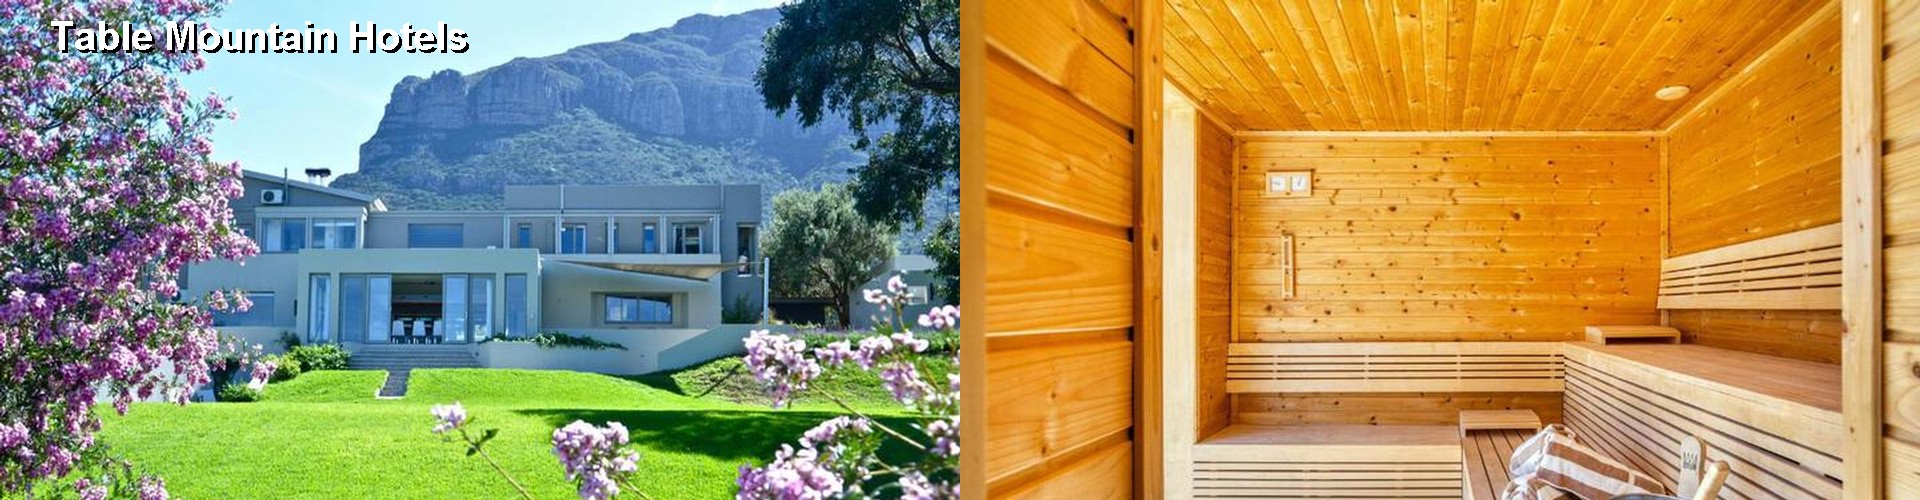 4 Best Hotels near Table Mountain